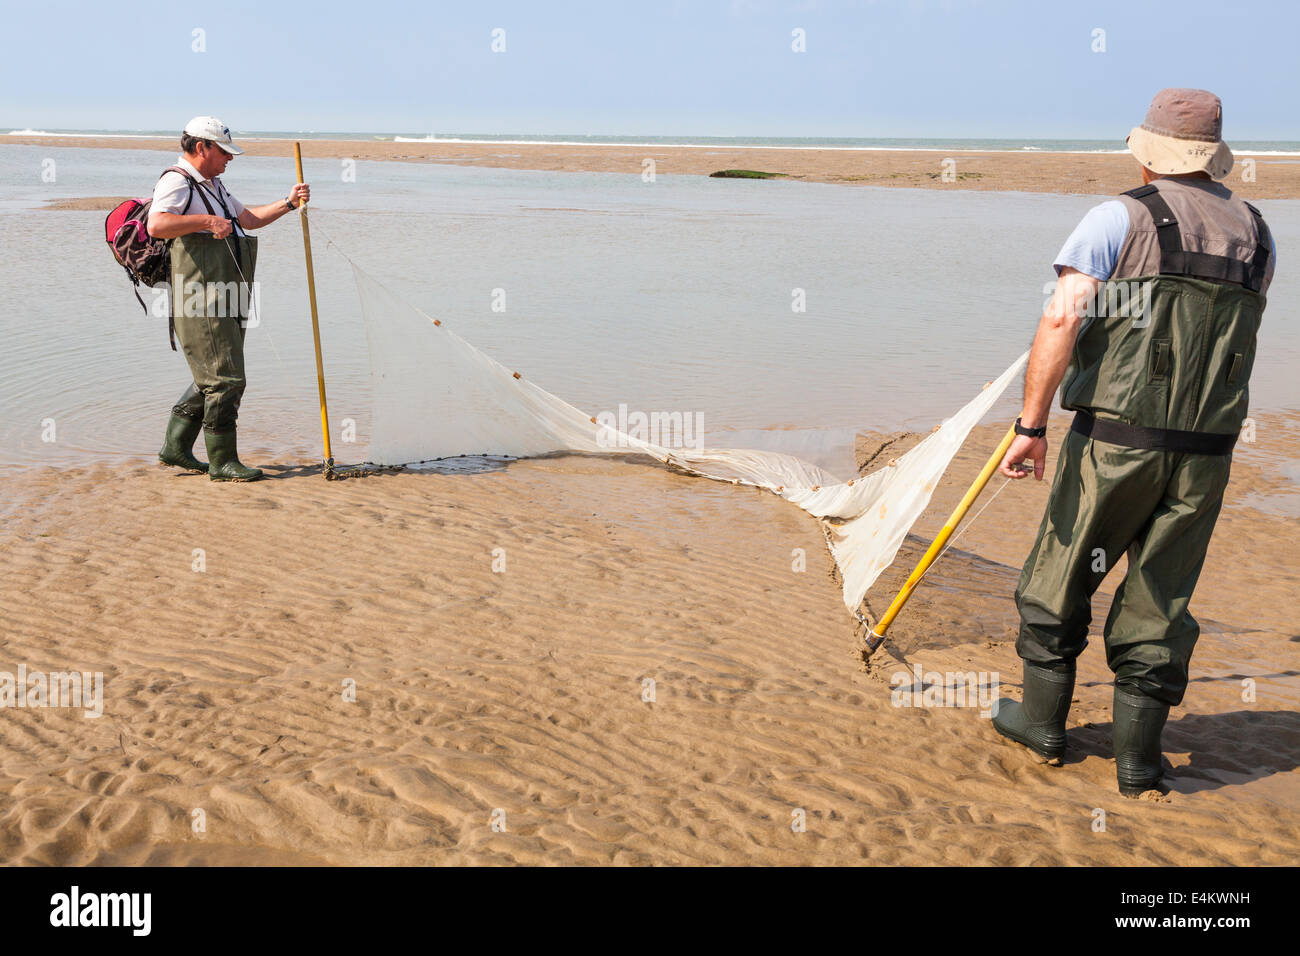 Dos pescadores arrastrar su red de arrastre en la playa cuando la pesca de arrastre de peces en un estanque formado por el retroceso de las mareas. Foto de stock